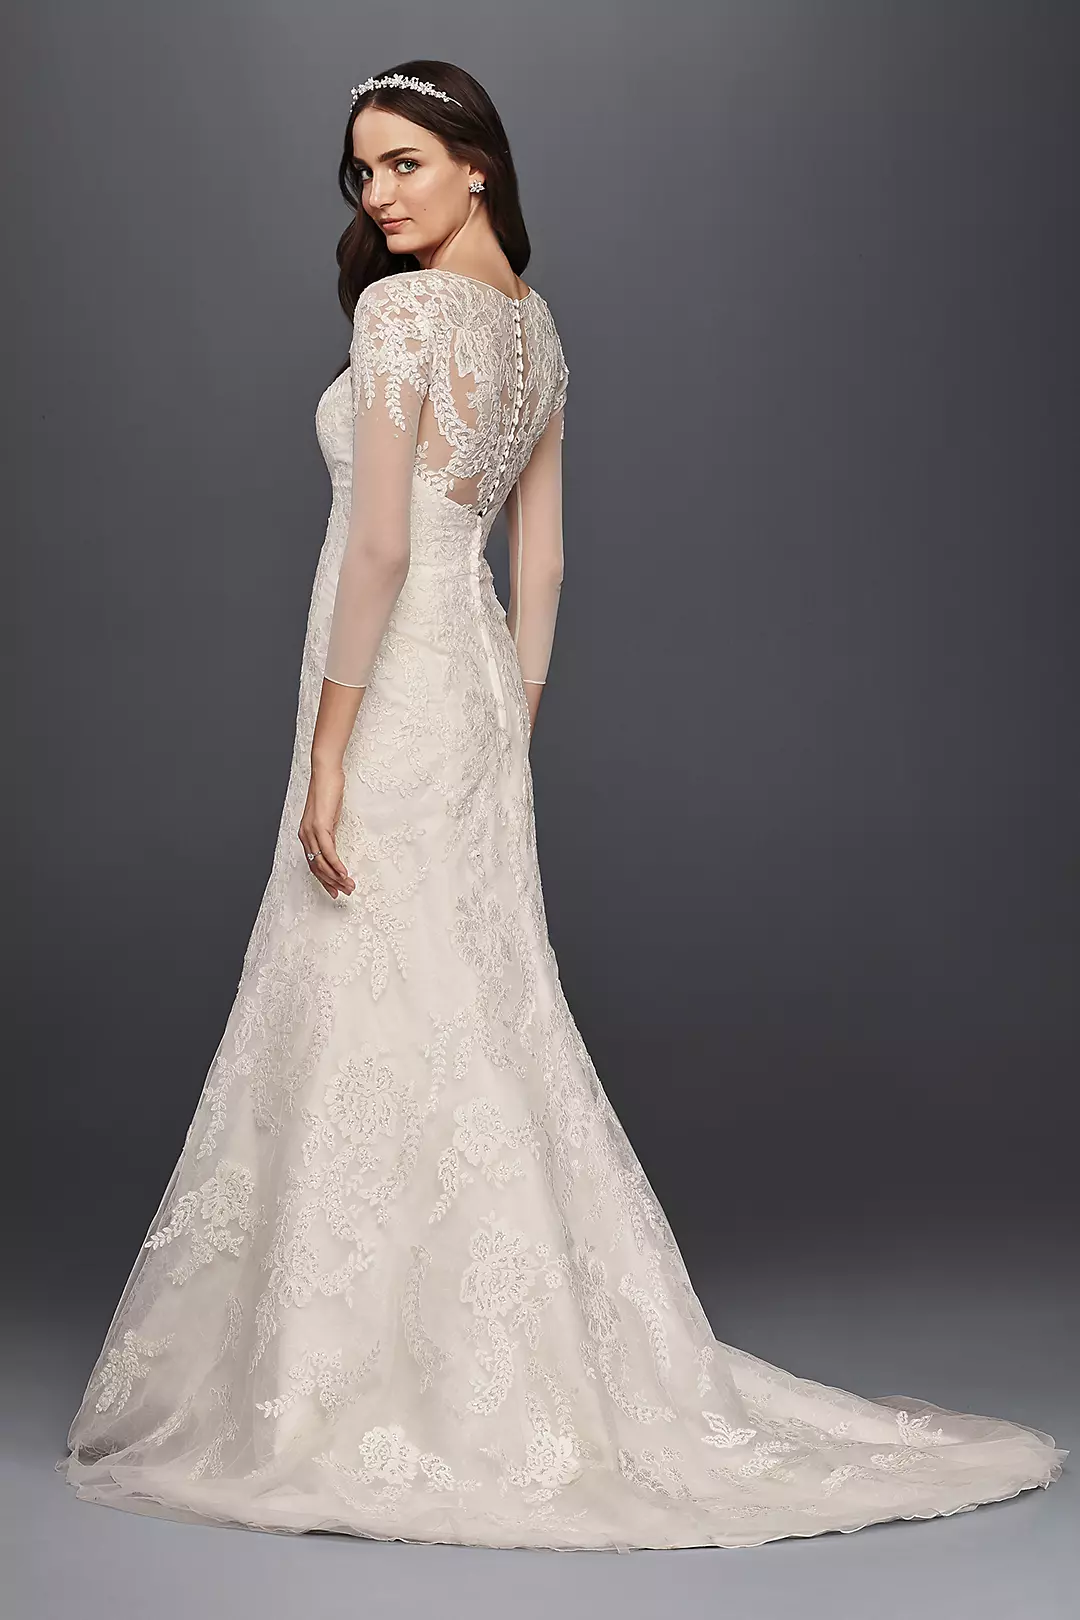 Oleg Cassini Lace Wedding Dress with 3/4 Sleeves  Image 2